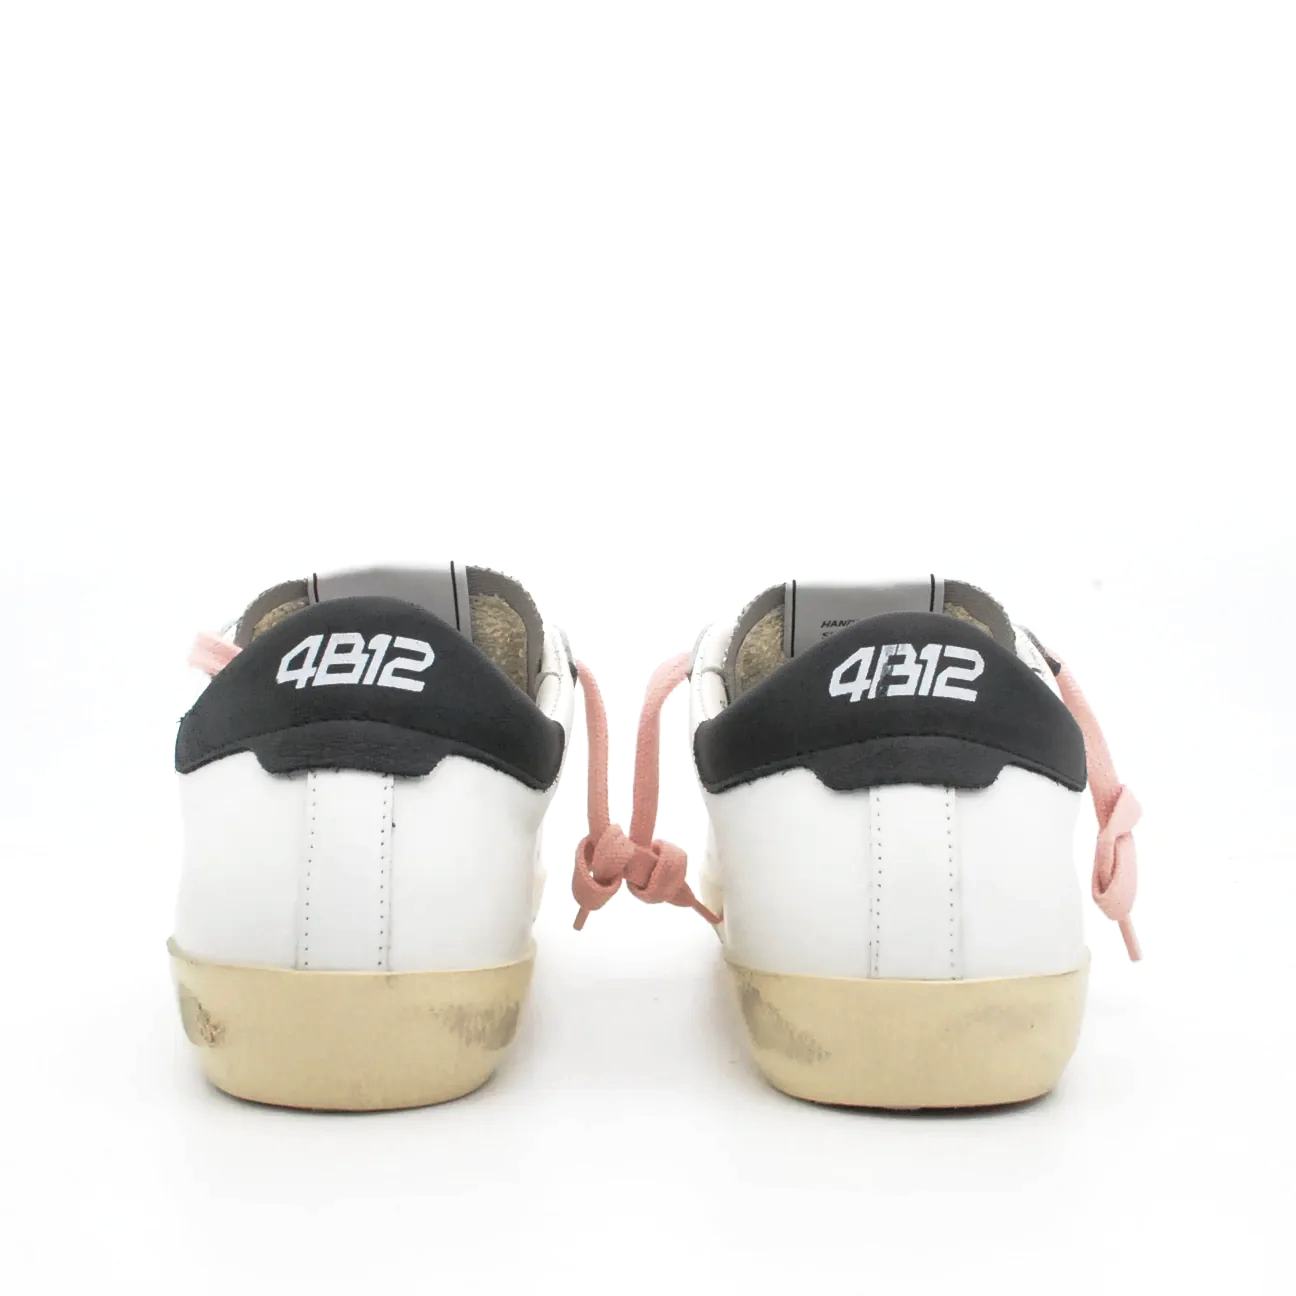 Sneakers 4B12 Suprime in pelle